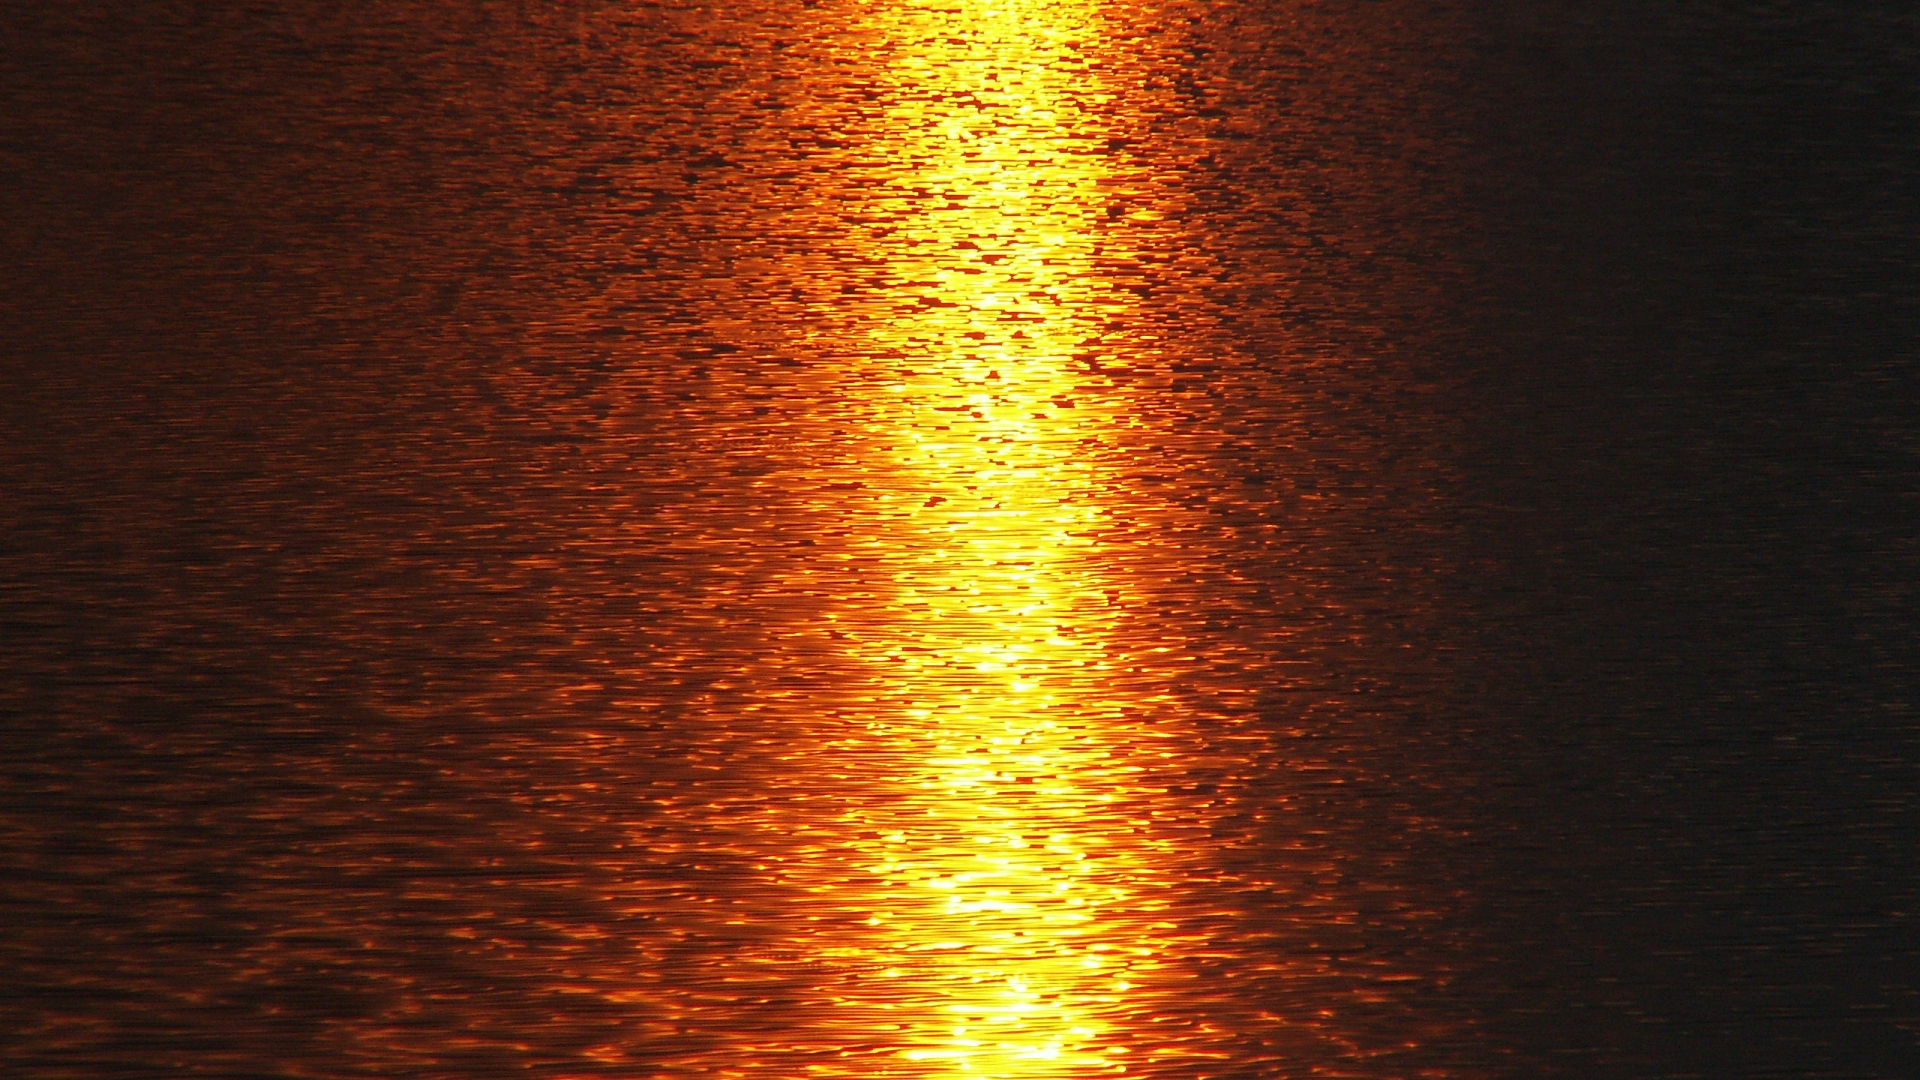 sunset, ocean - desktop wallpaper